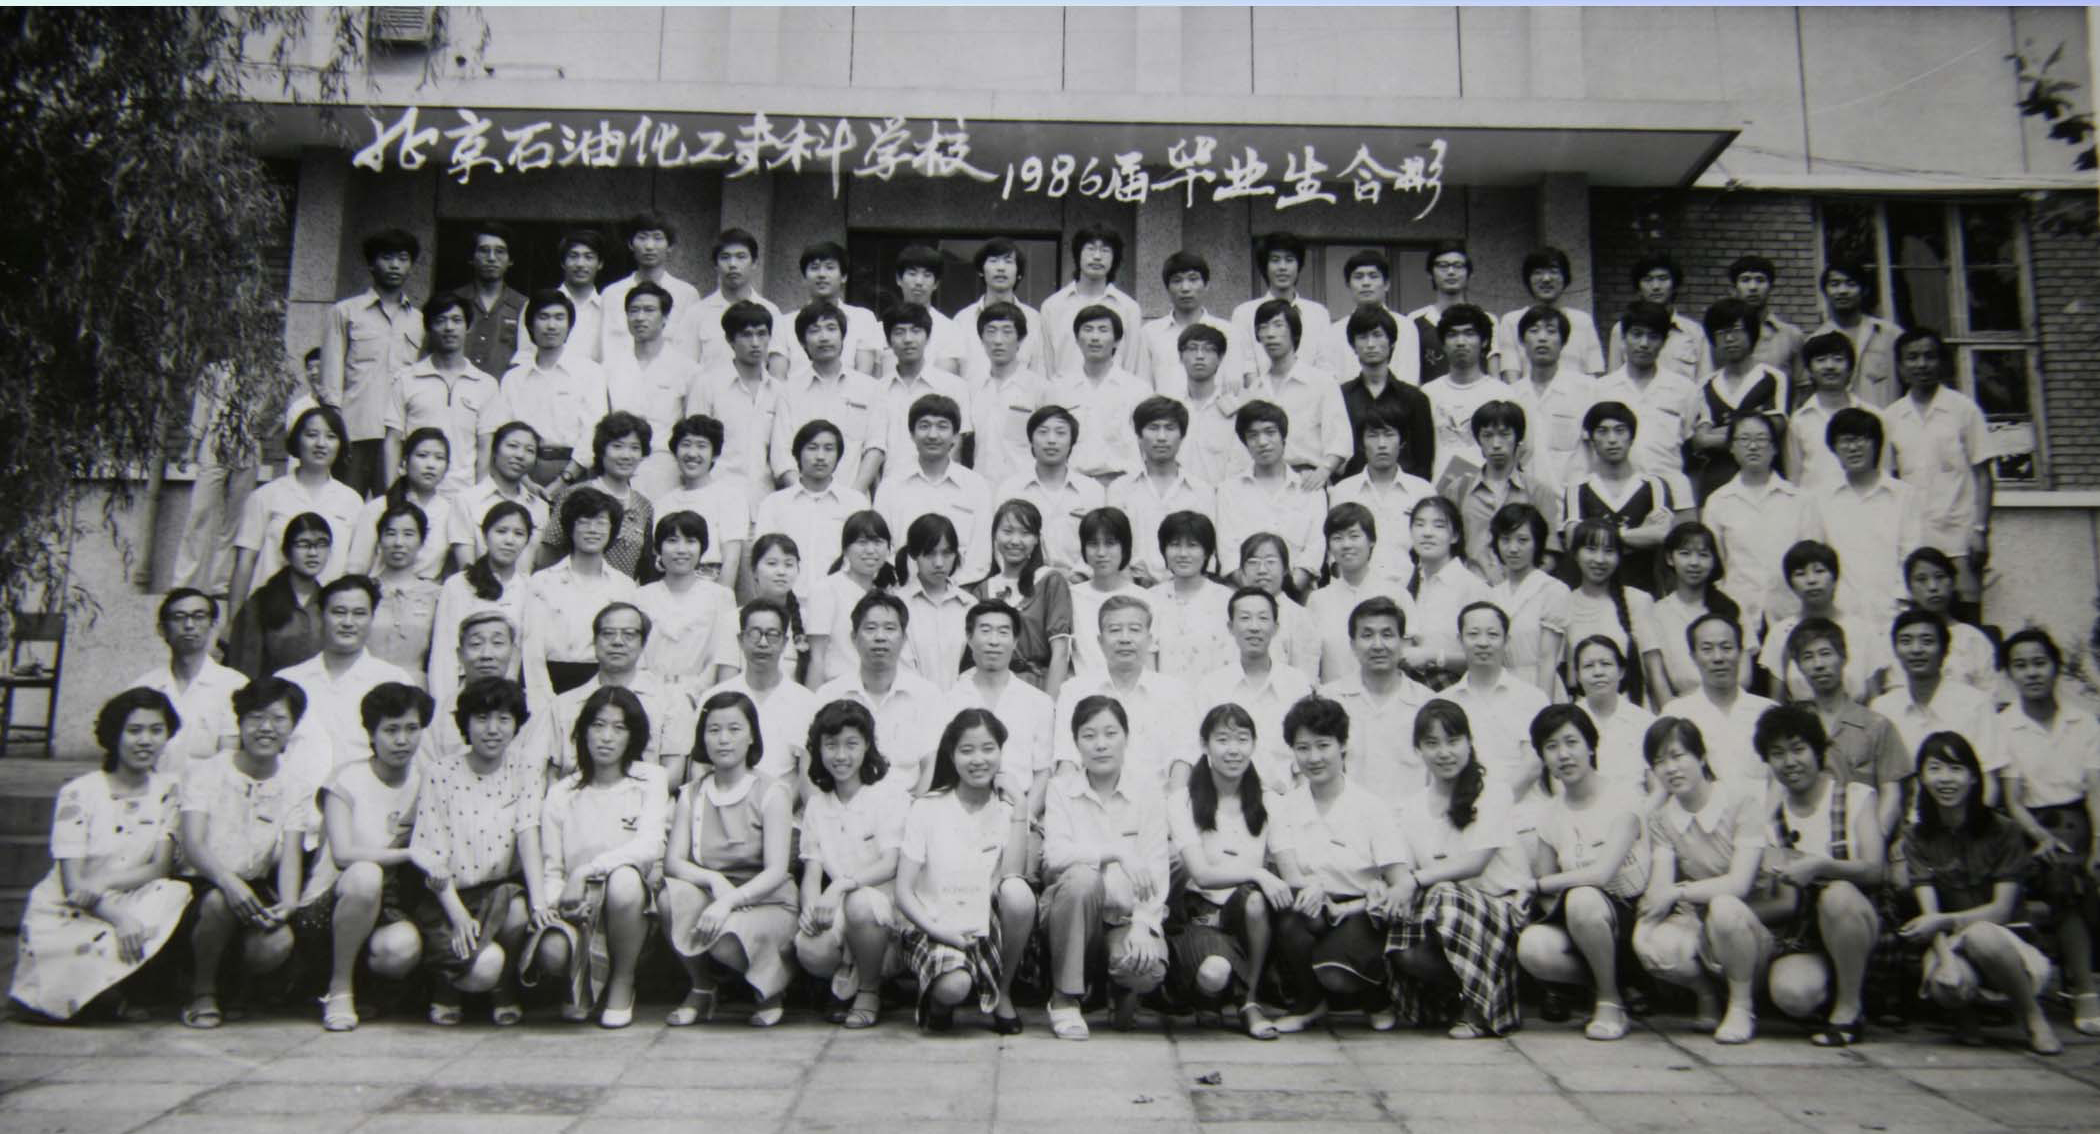 北京石油化工专科学校 1986届毕业照.jpg